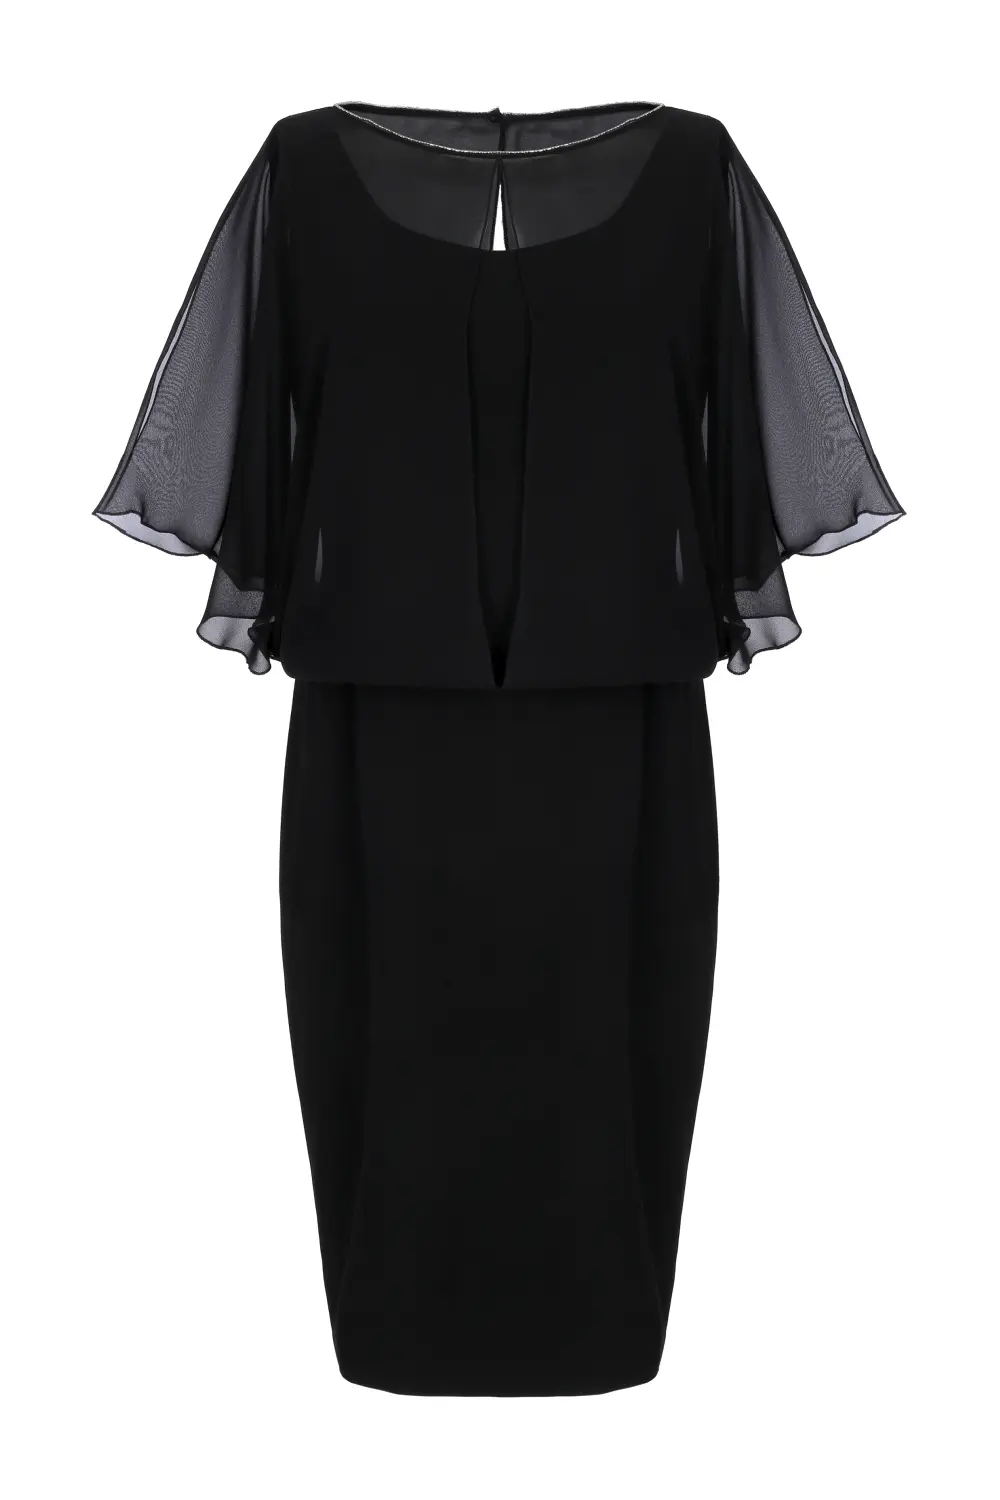 Czarna sukienka wizytowa z szyfonem polska marka Vito Vergelis